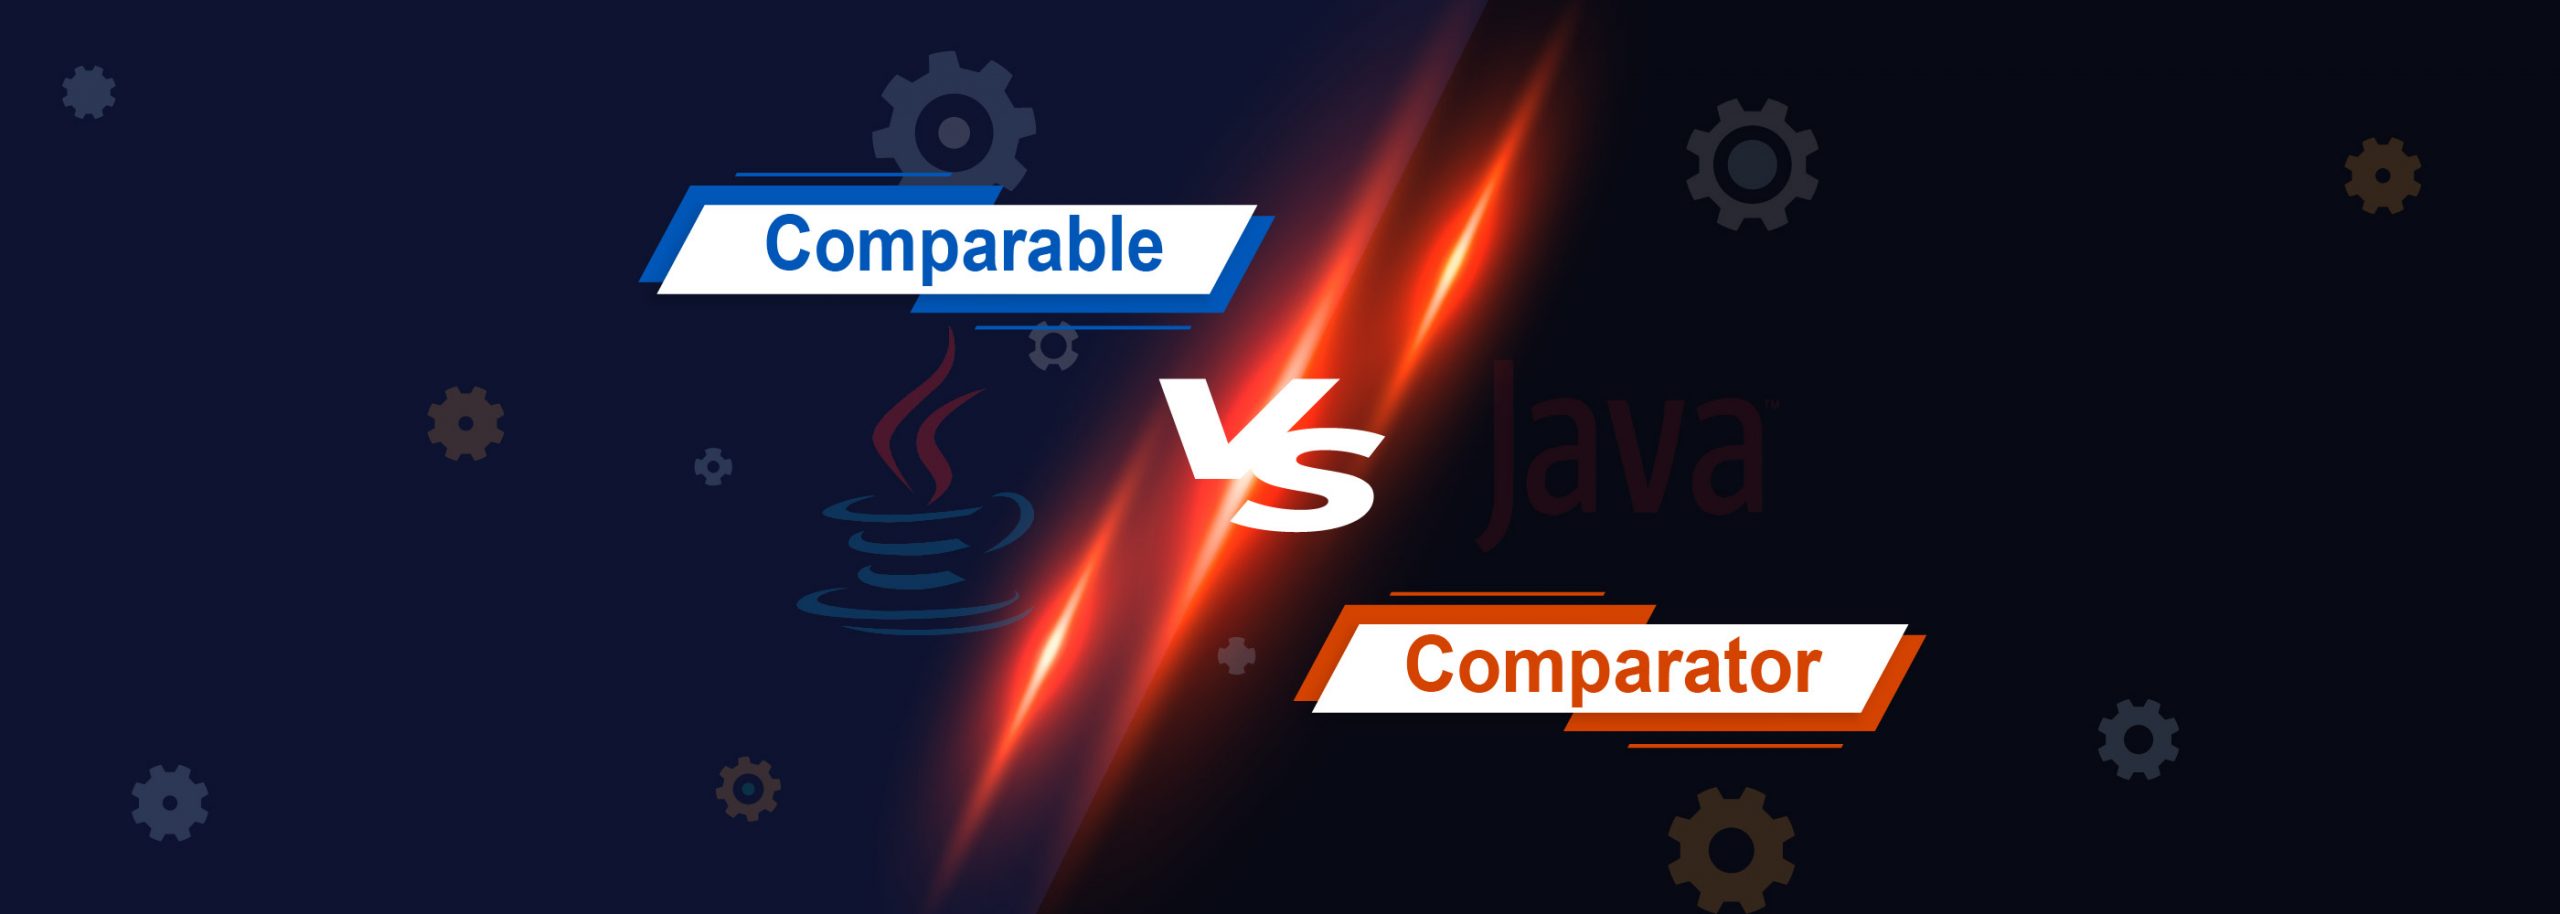 Comparable vs Comparator Java